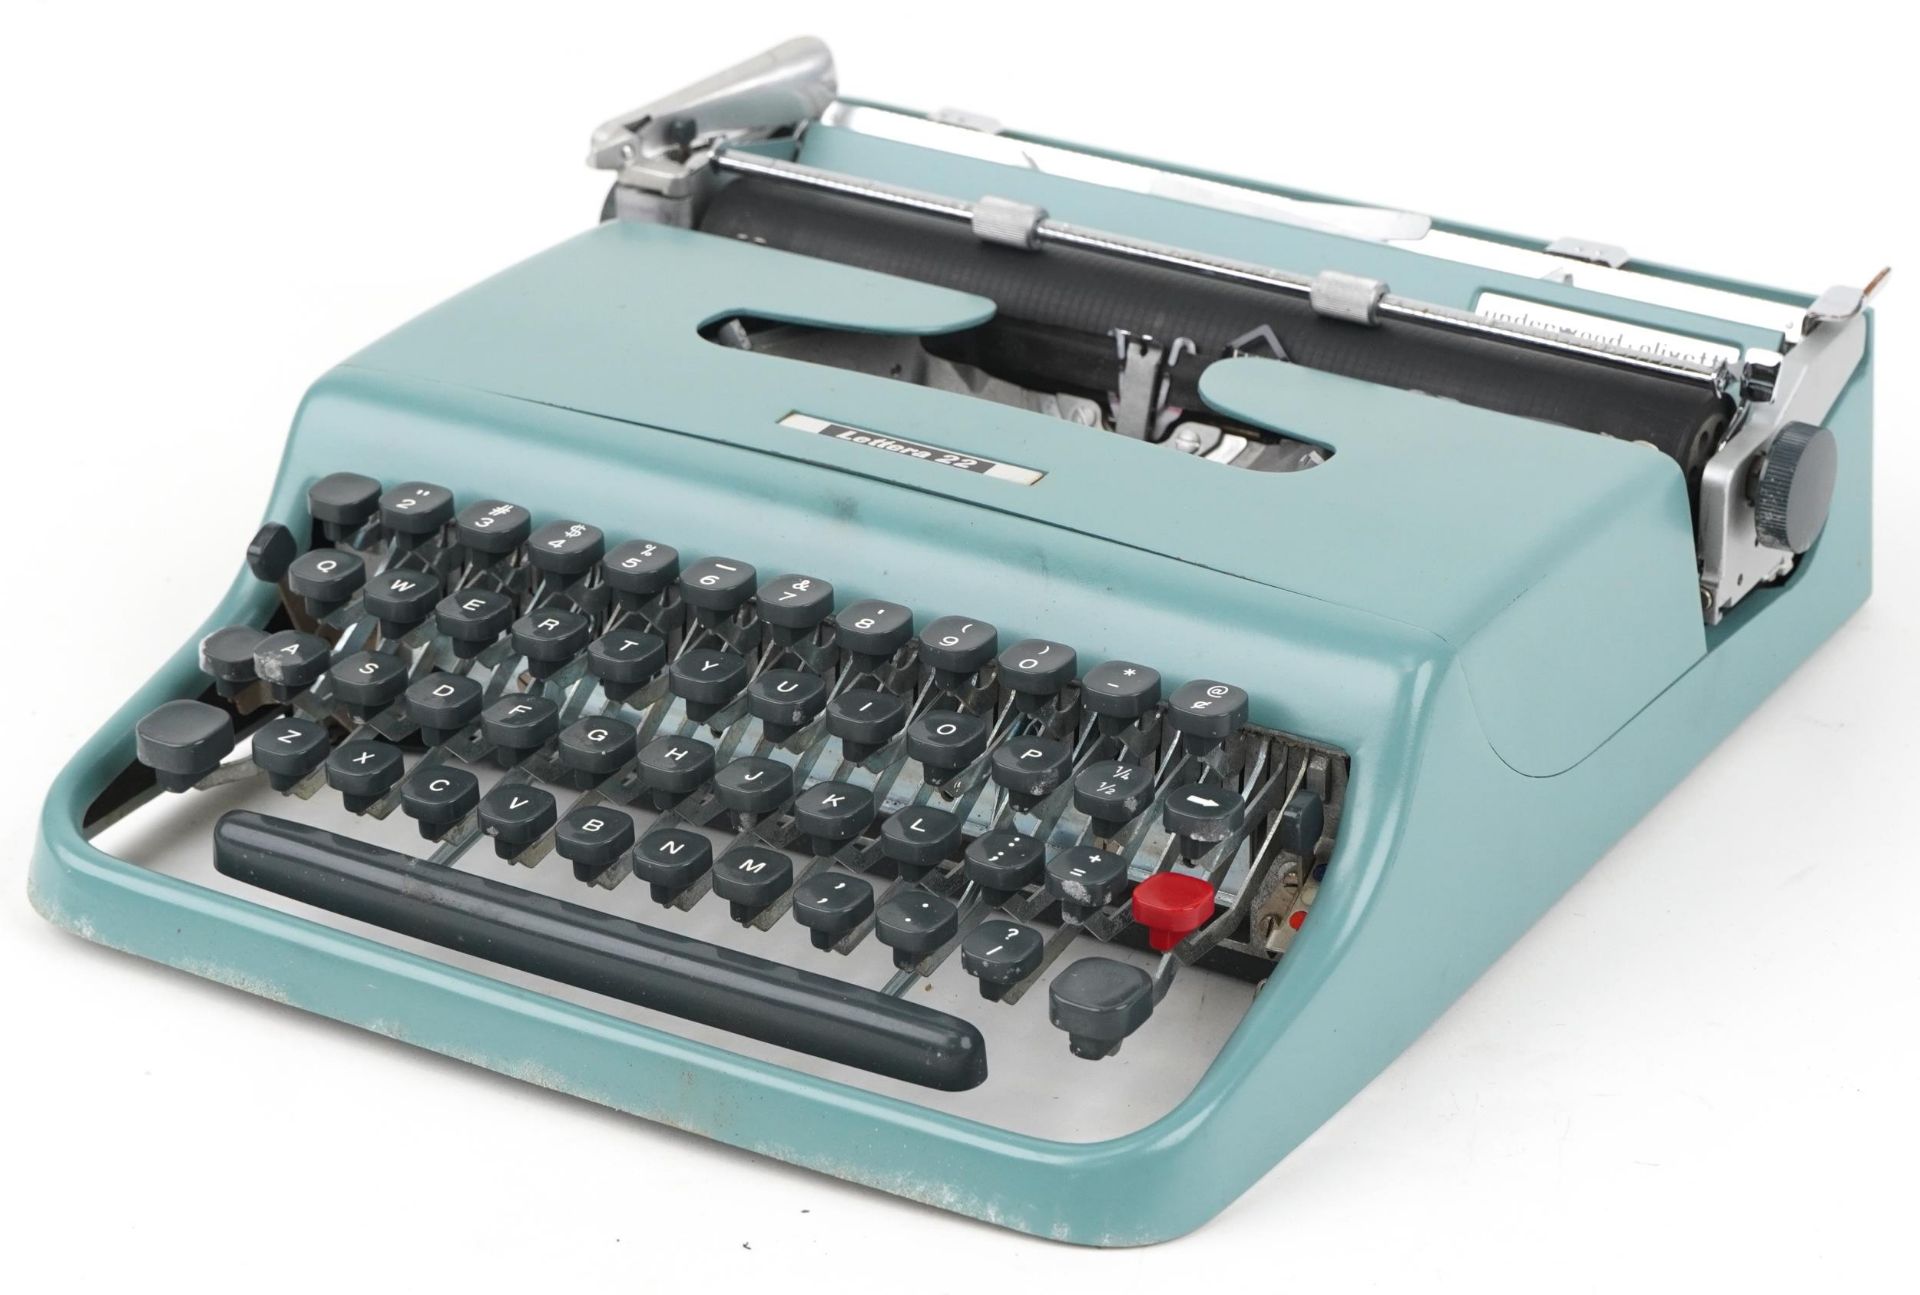 Vintage Lettera 22 portable typewriter with case - Bild 2 aus 4